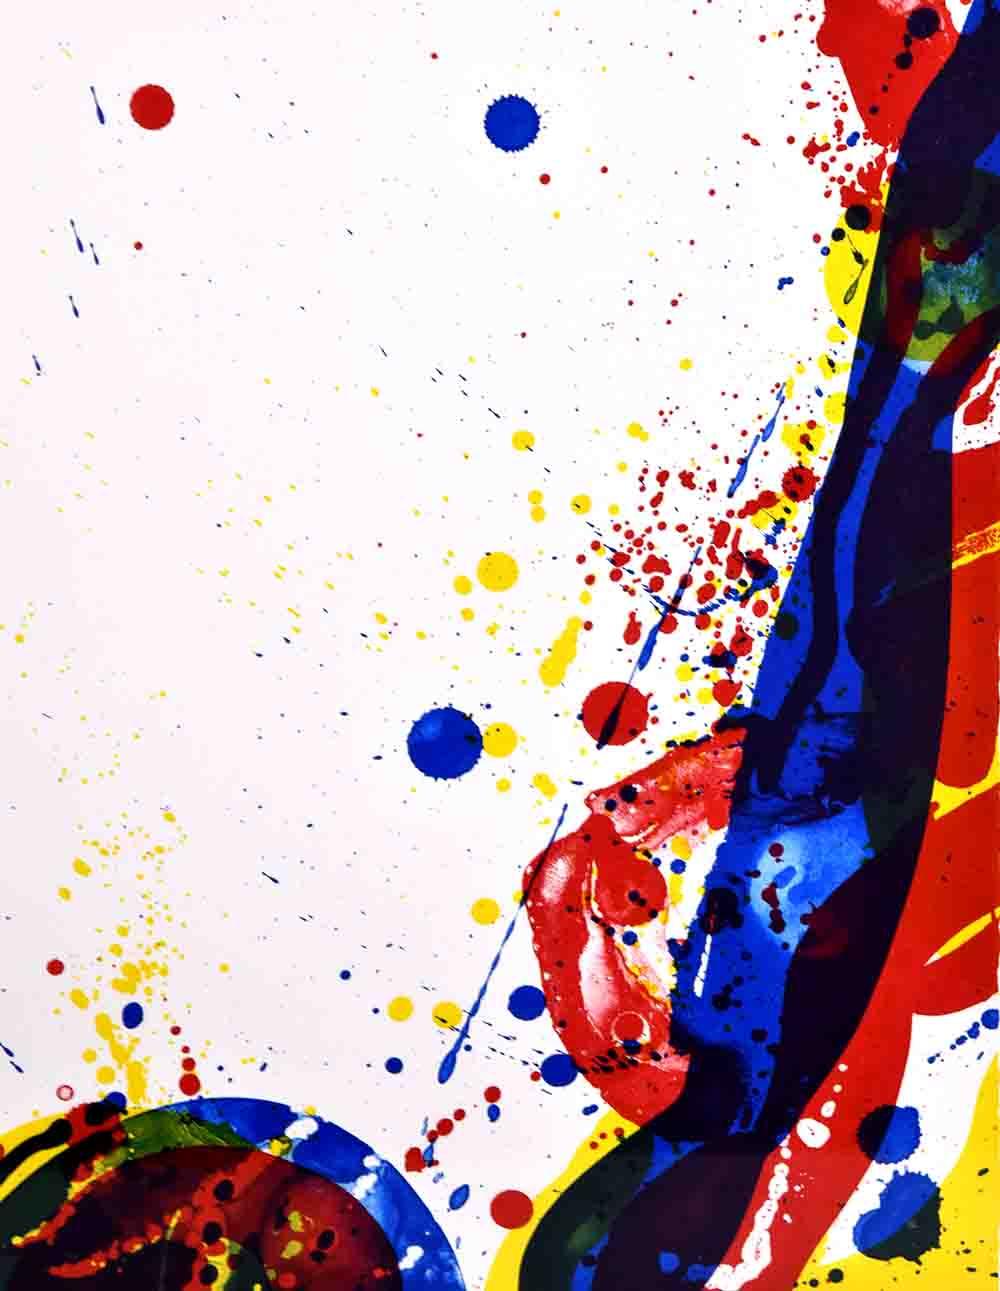 Sam Formations A Sail, 1969 est une expression passionnante de couleur et de mouvement formatée en orientation paysage. Emblématique de deux des approches les plus reconnues de l'artiste, A Sail, 1969 montre son application plus picturale, rapide et